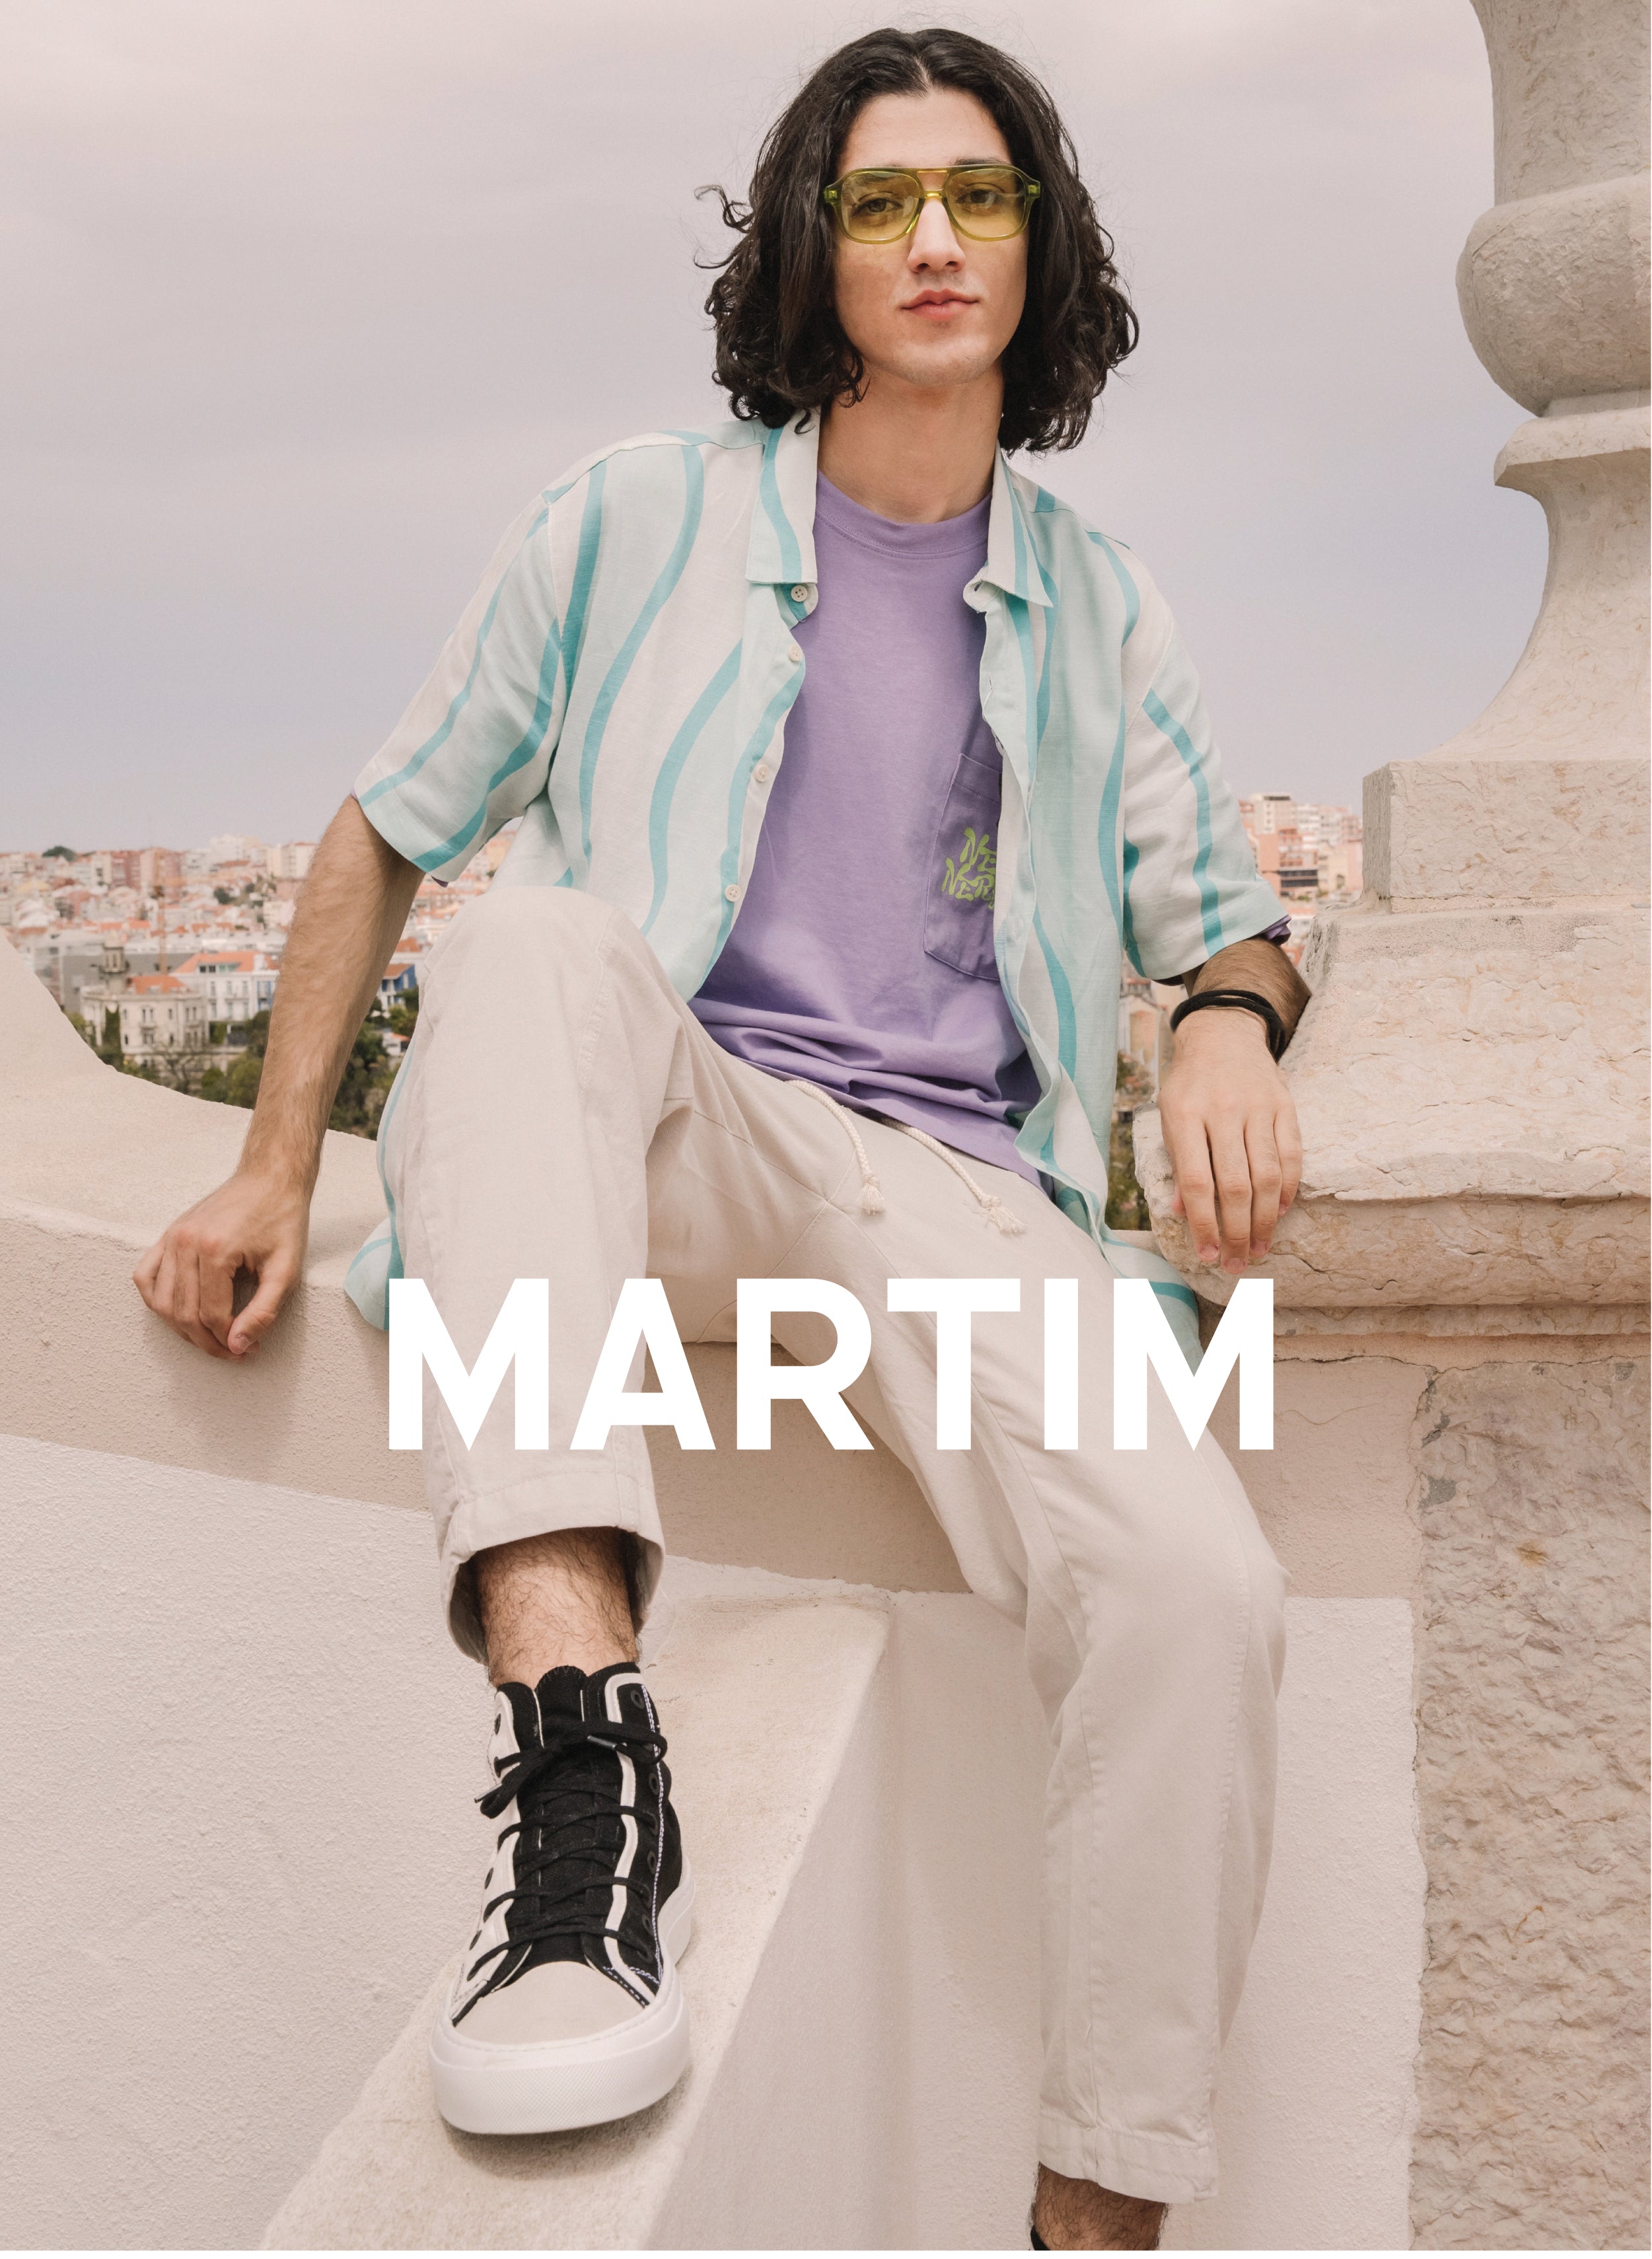 Martim auf einer Mauer mit einer Landschaft sitzend, Diverge sneakers, Förderung der sozialen Wirkung und maßgefertigter Schuhe.  